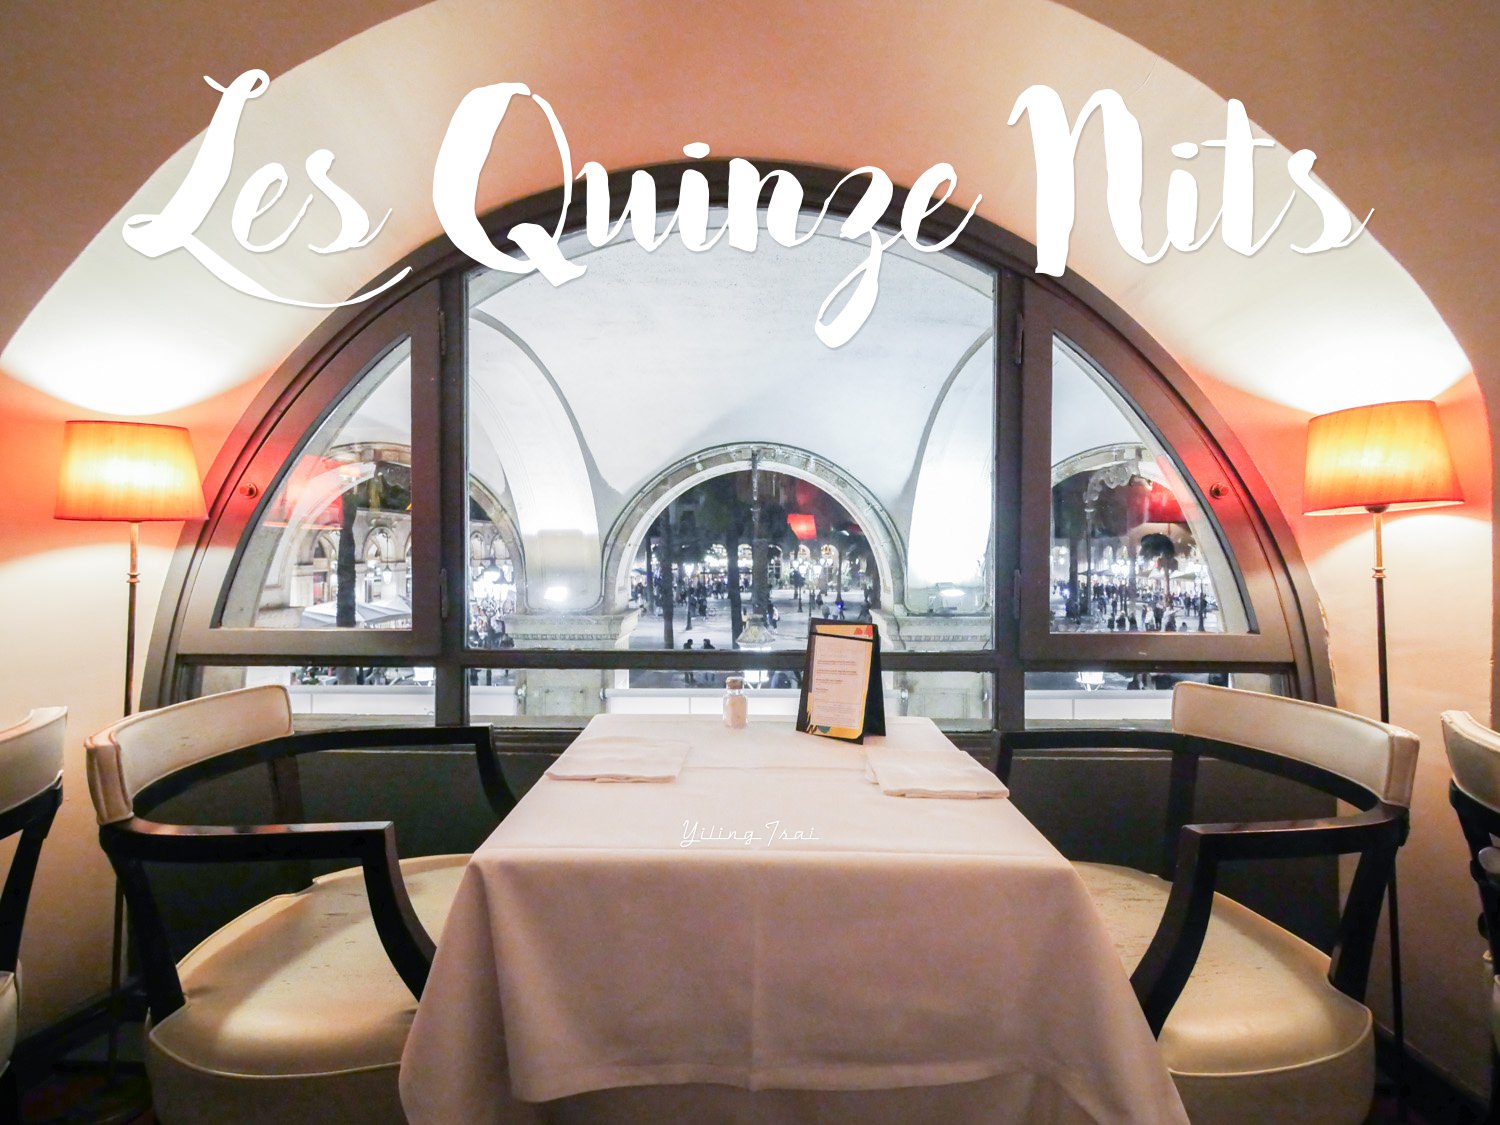 西班牙巴塞隆納美食推薦 Les Quinze Nits 海鮮燉飯名店